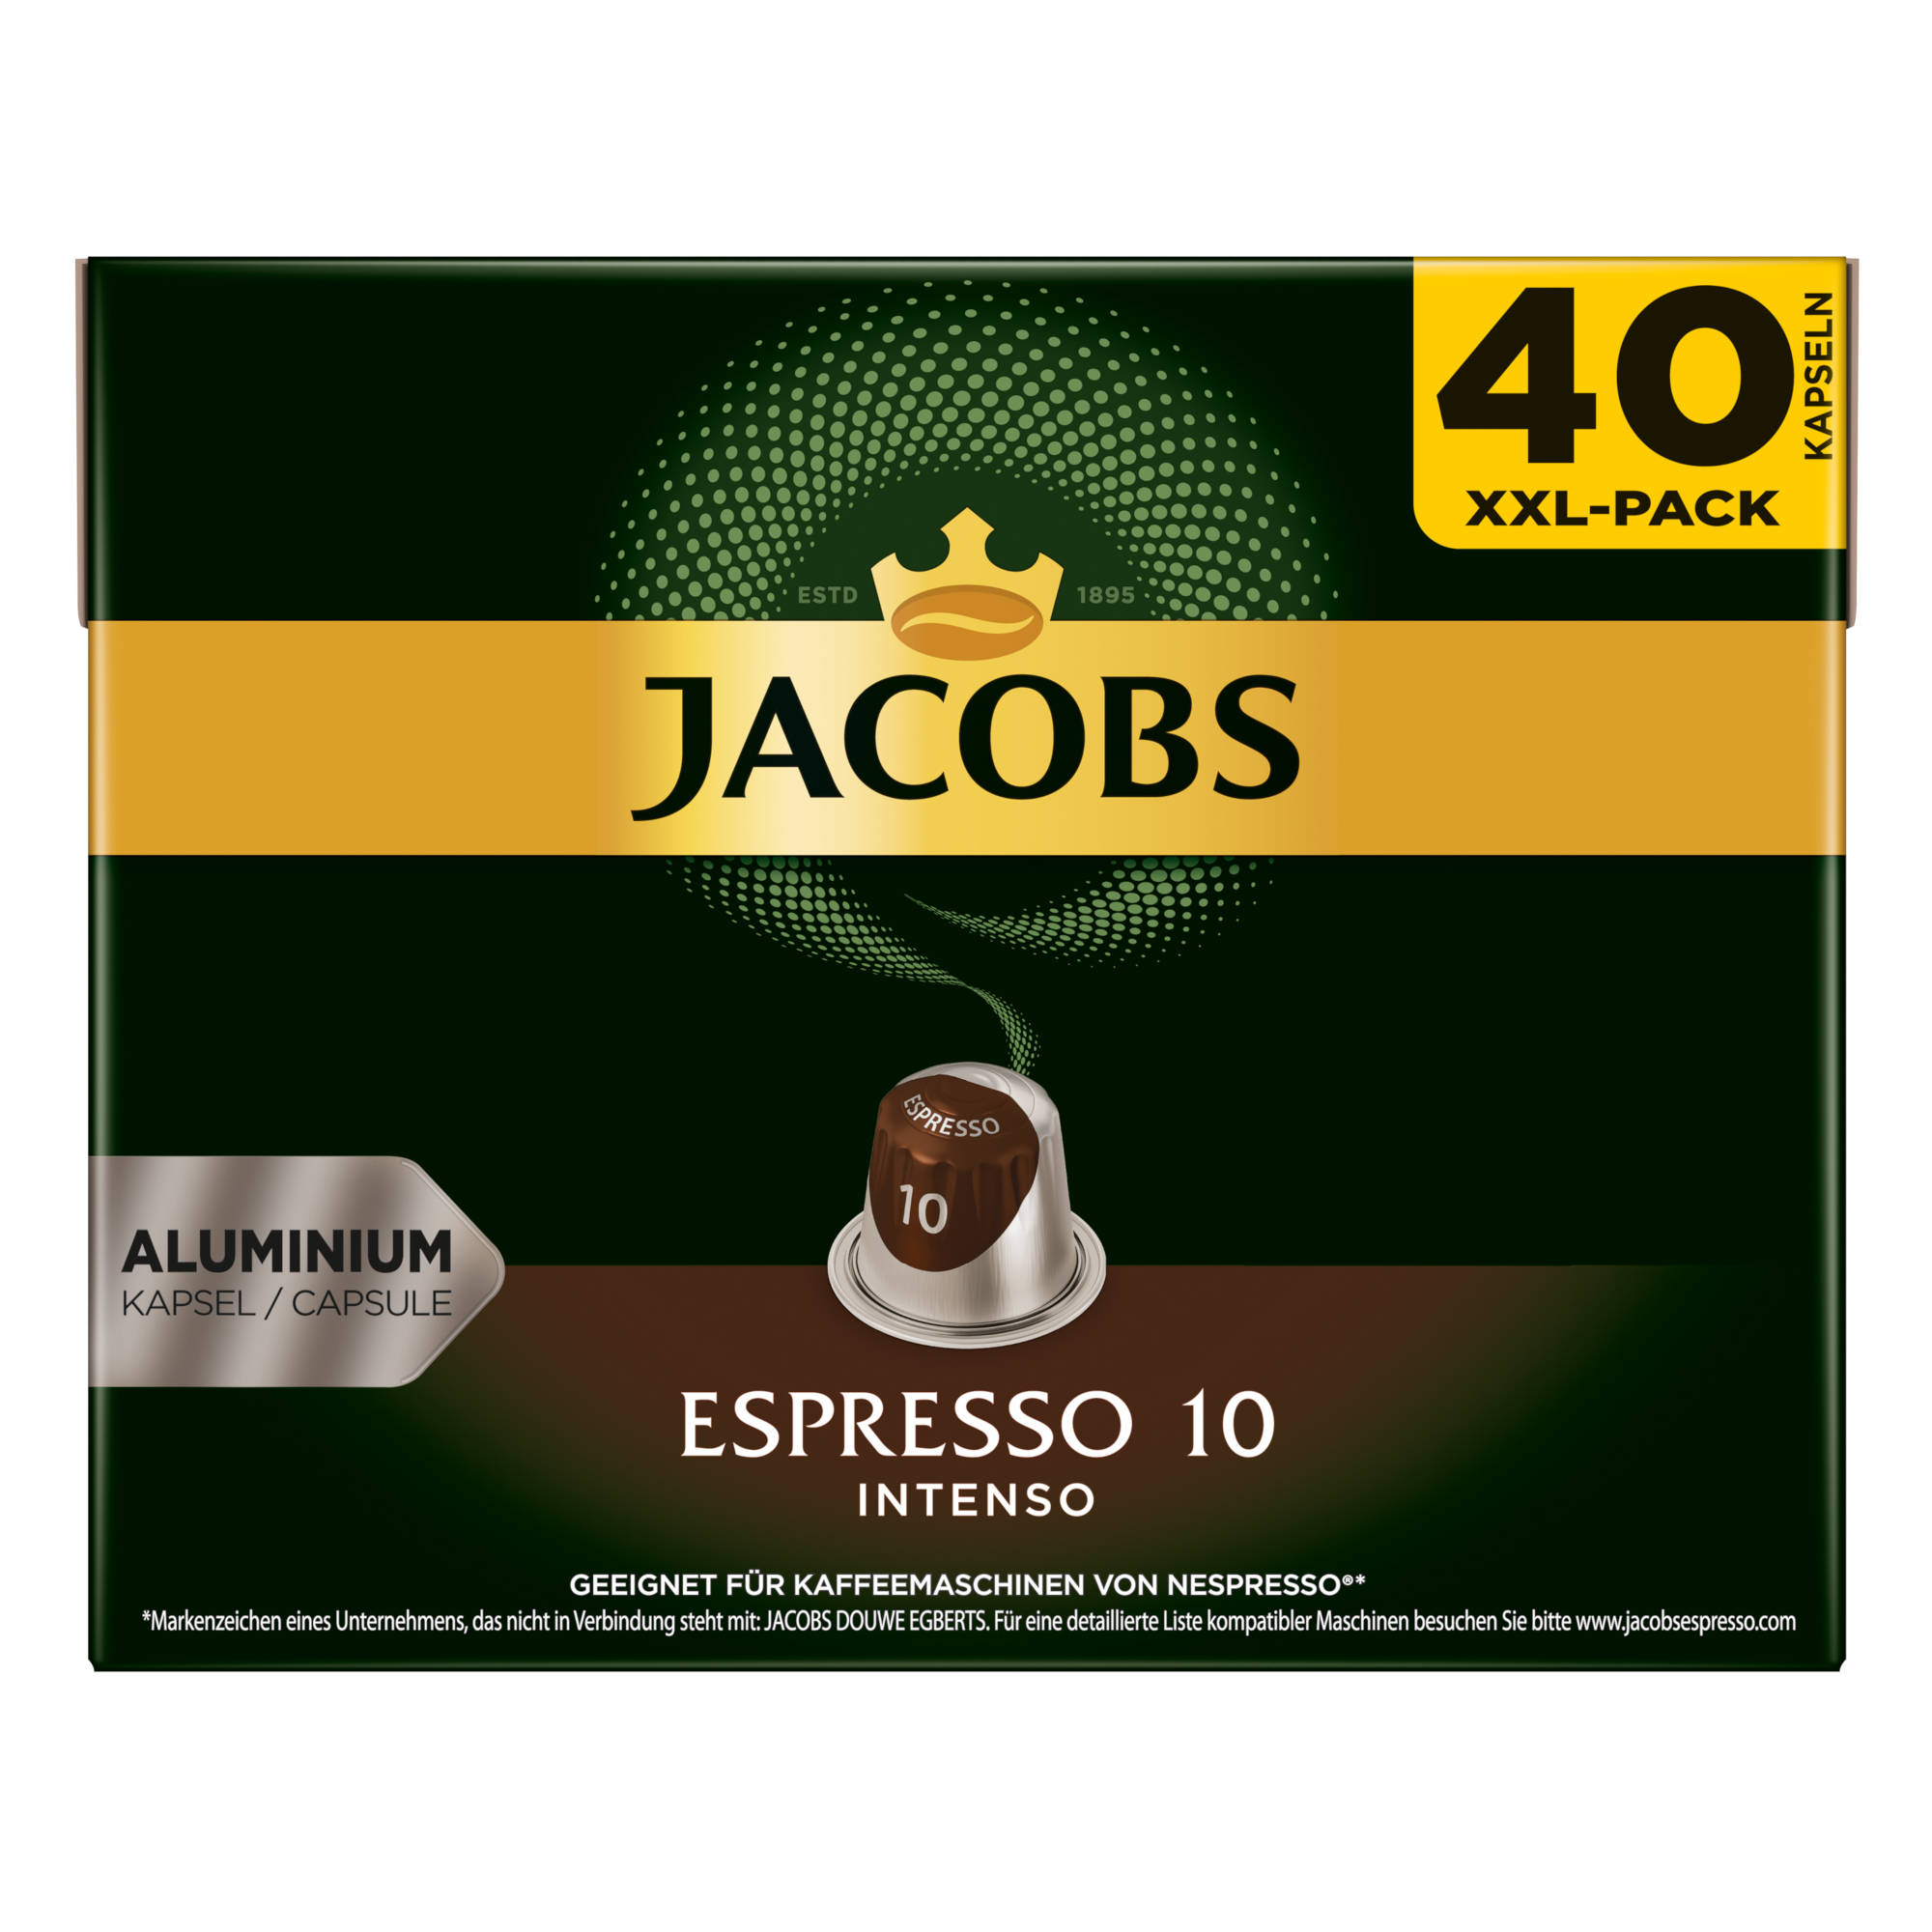 JACOBS Espresso 10 Intenso 5 40 (Nespresso System) XXL-Pack Kaffeekapseln Nespresso®* kompatible x